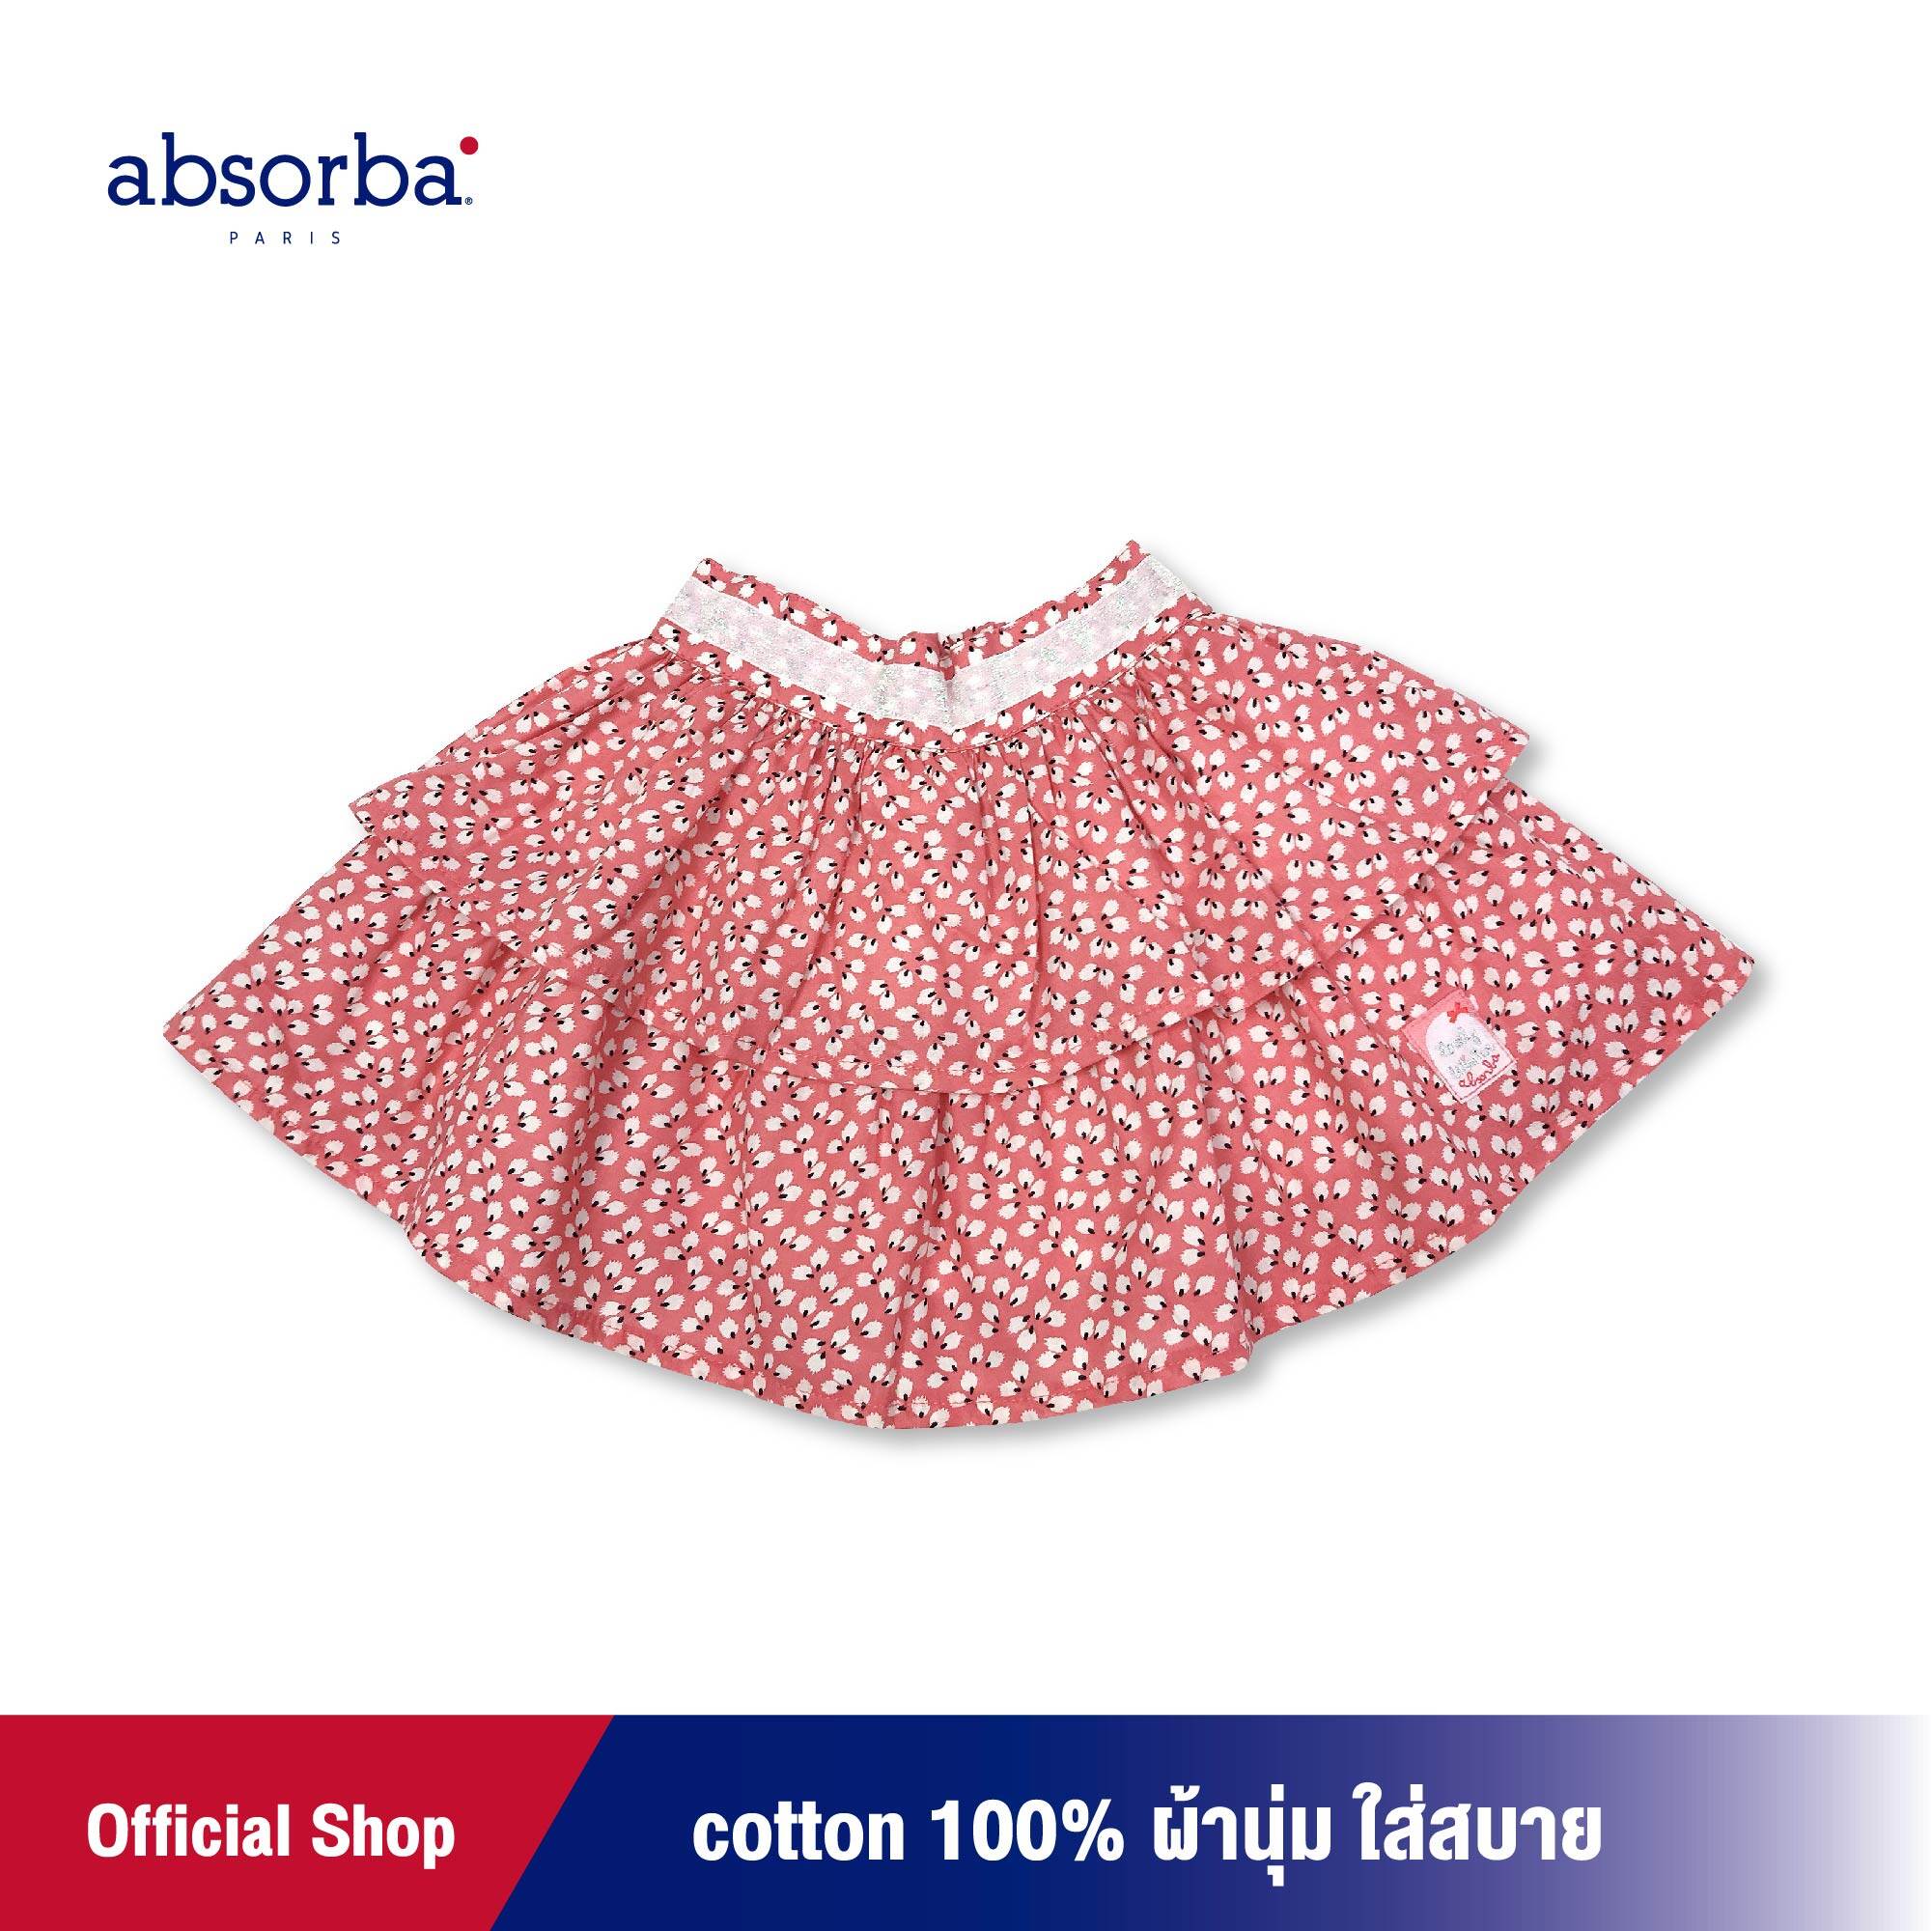 absorba(แอ็บซอร์บา)กระโปรงแฟชั่นเด็กหญิง ผ้าคอตตอนแท้ 100% ใส่สบาย ปลอดภัย ไม่ระคายเคืองผิว สำหรับเด็กอายุ 2 ปี สีชมพูแดง แพ็ค 1 ชิ้น - R2P0017OR